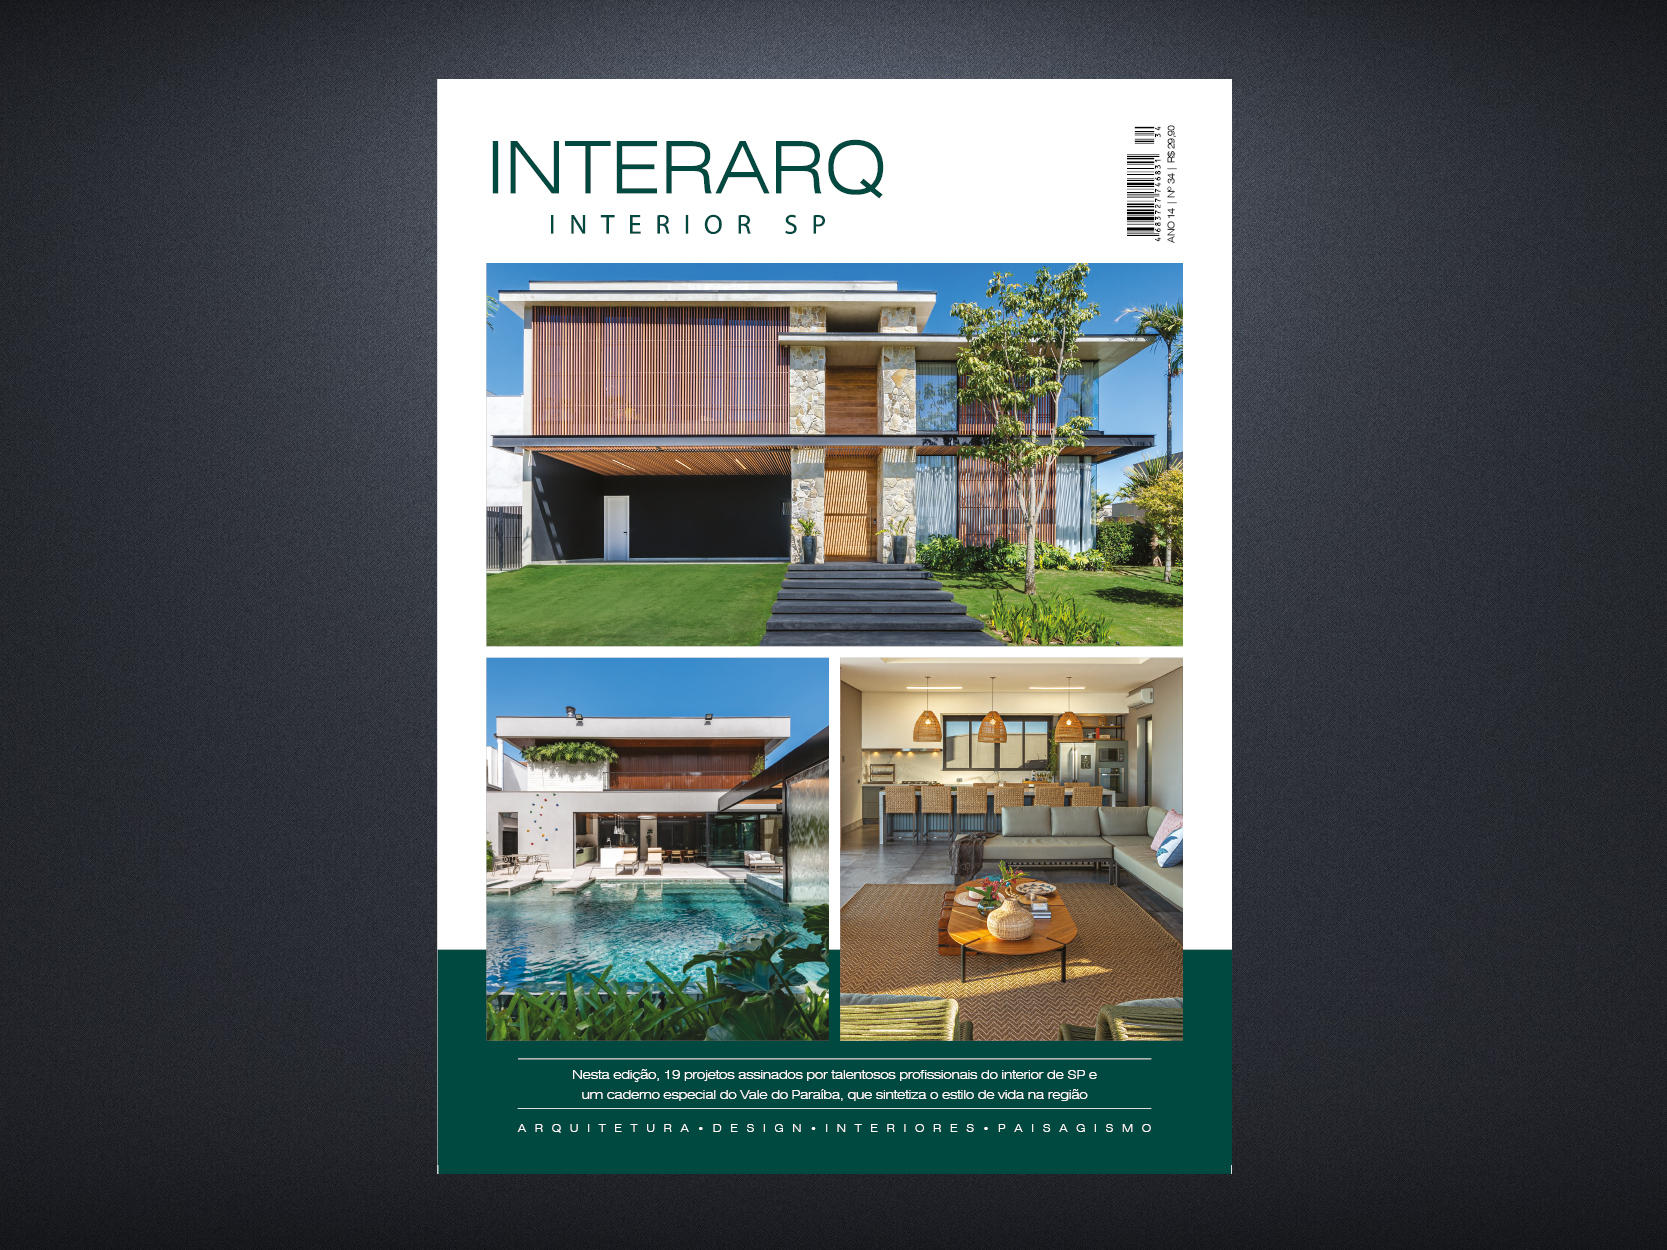 INTERARQ INTERIOR SP 34 - Revista InterArq | Arquitetura, Decoração, Design, Paisagismo e Lifestyle